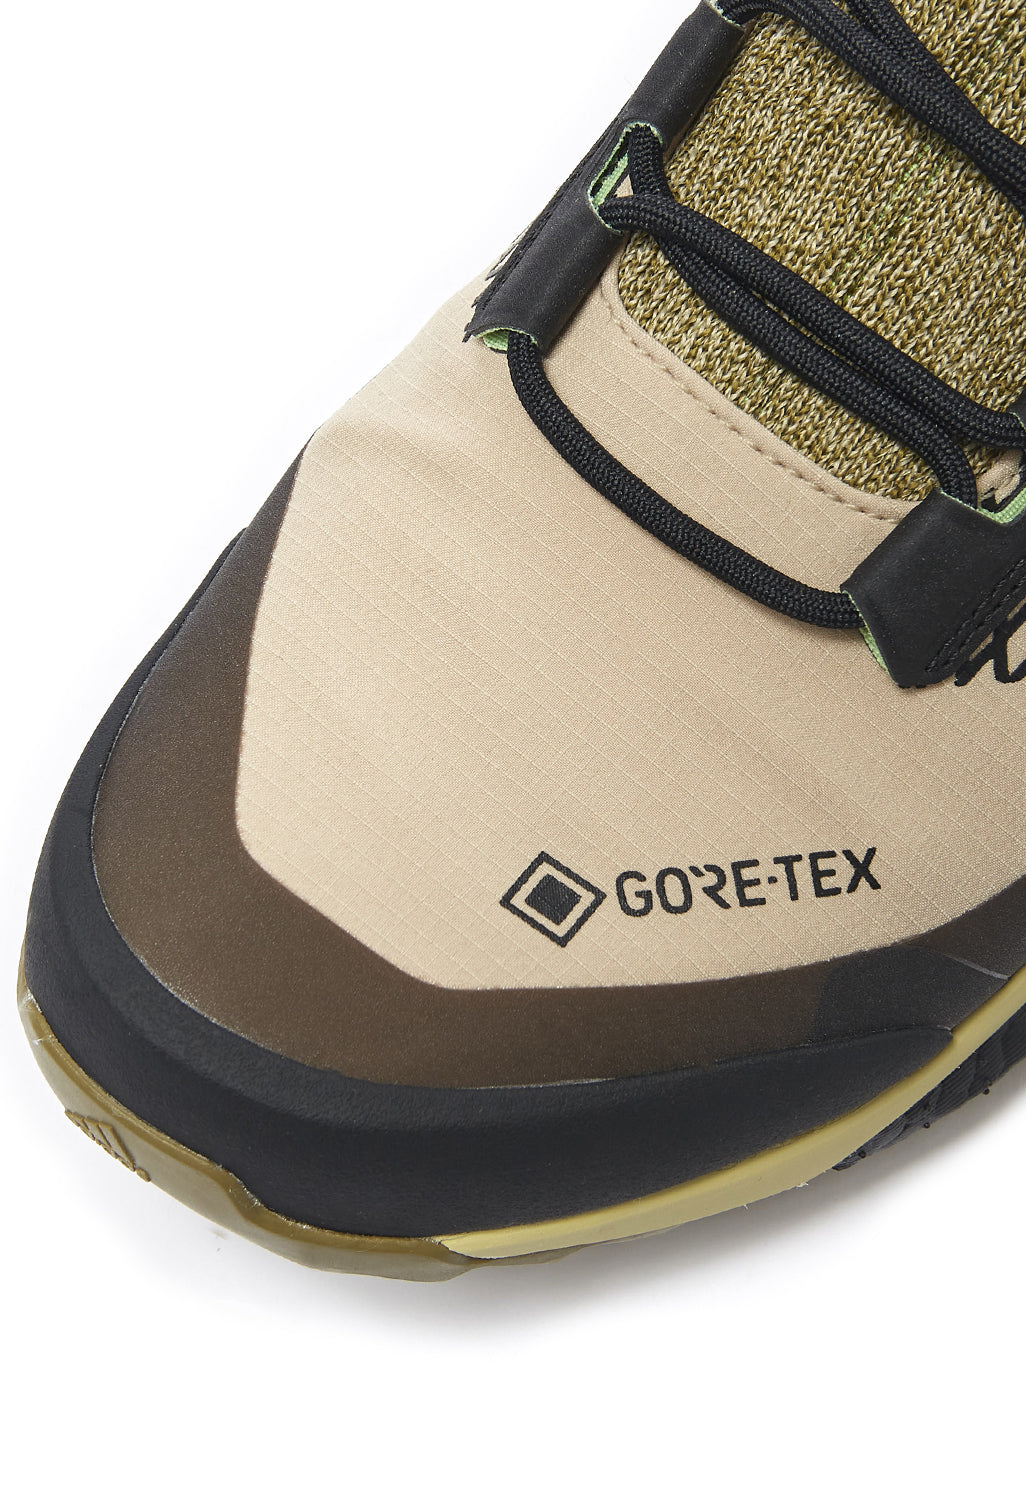 adidas Terrex Free Hiker GORE-TEX Men's Boots - Savannah/Hi-Res Yellow/Core Black